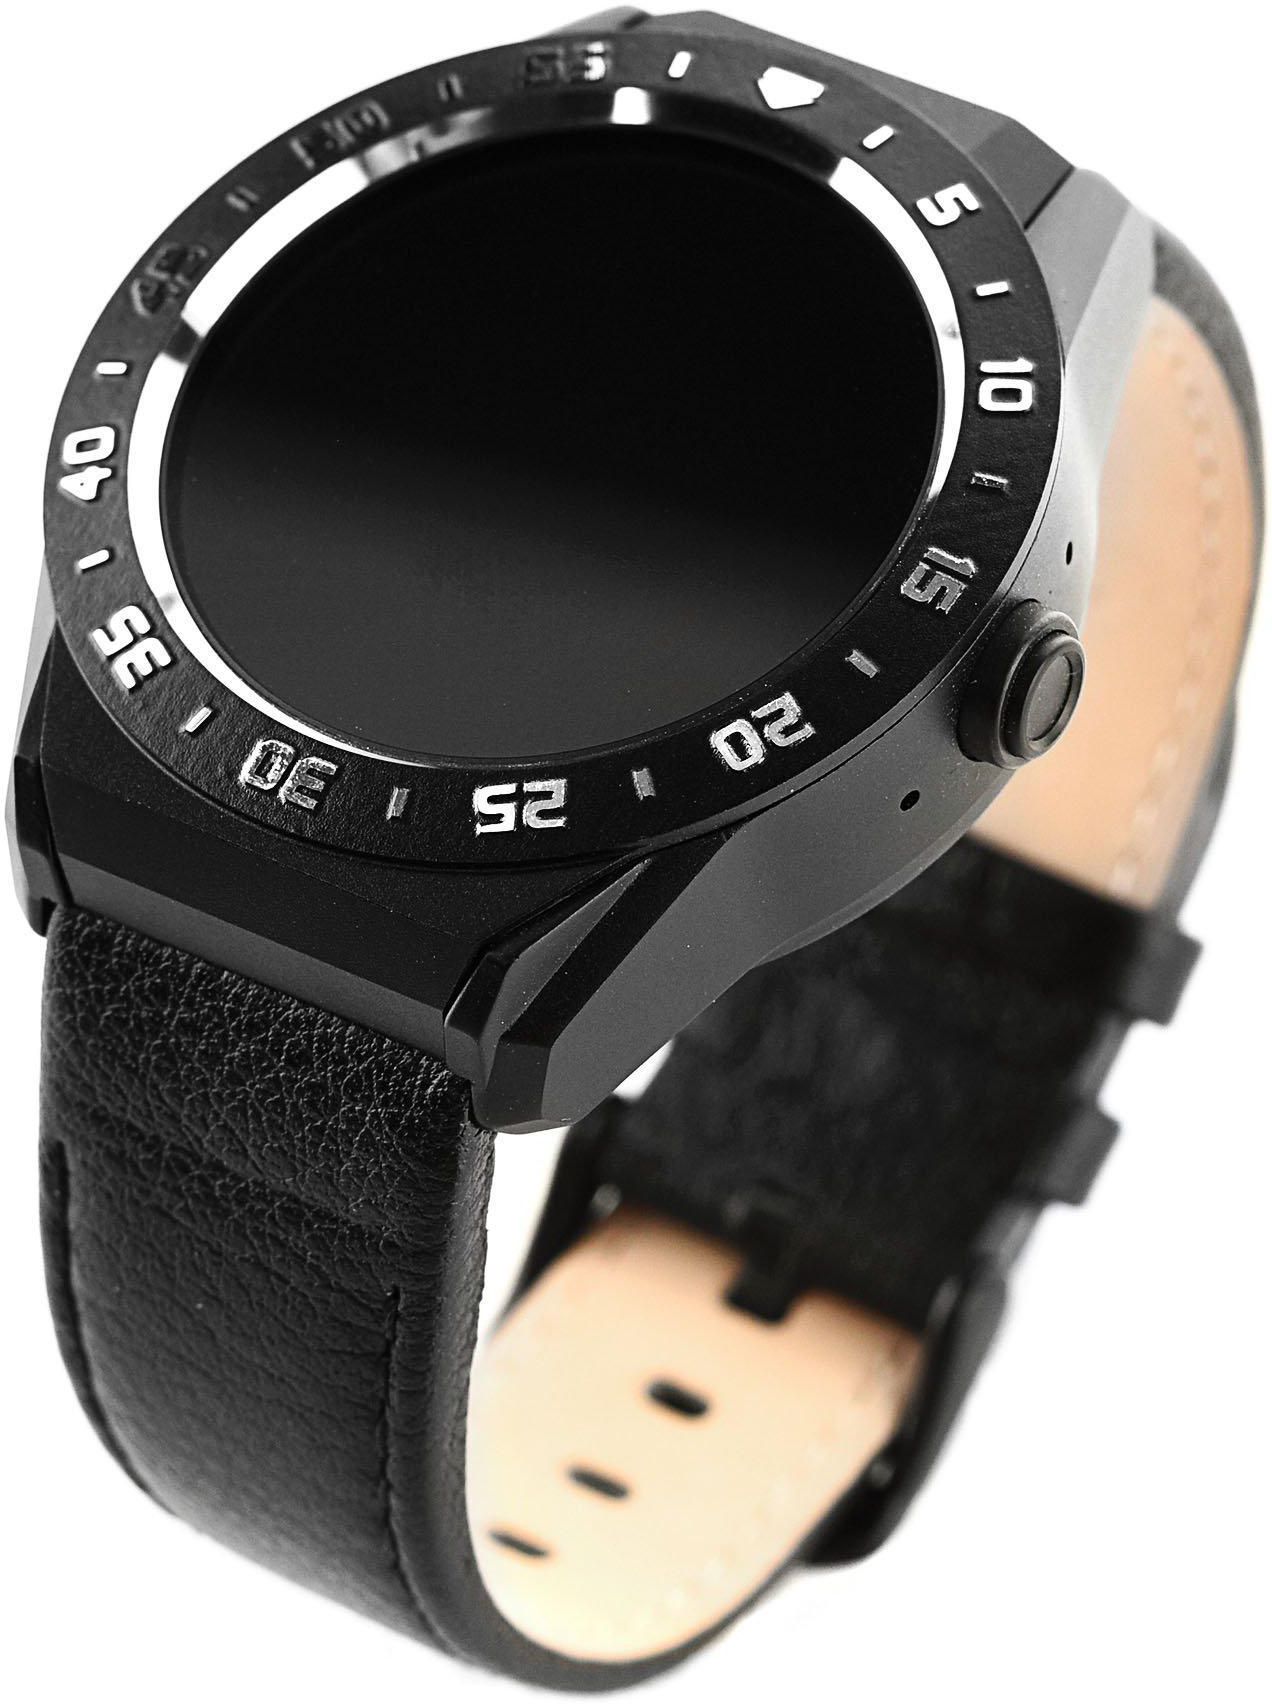 Smart watch R9 black metal leather bracelet